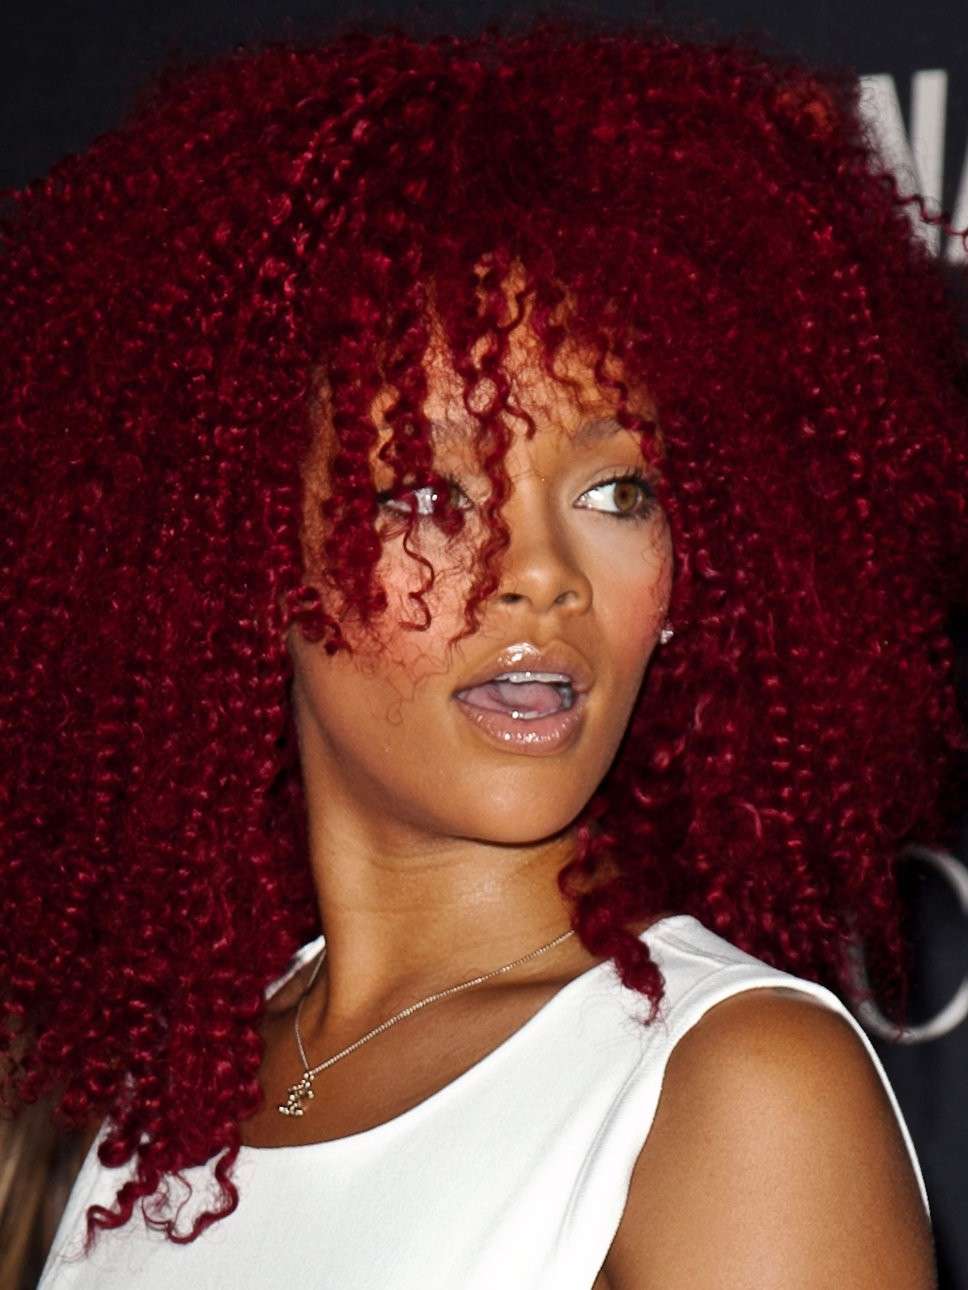 Tagli estivi per capelli ricci: Rihanna